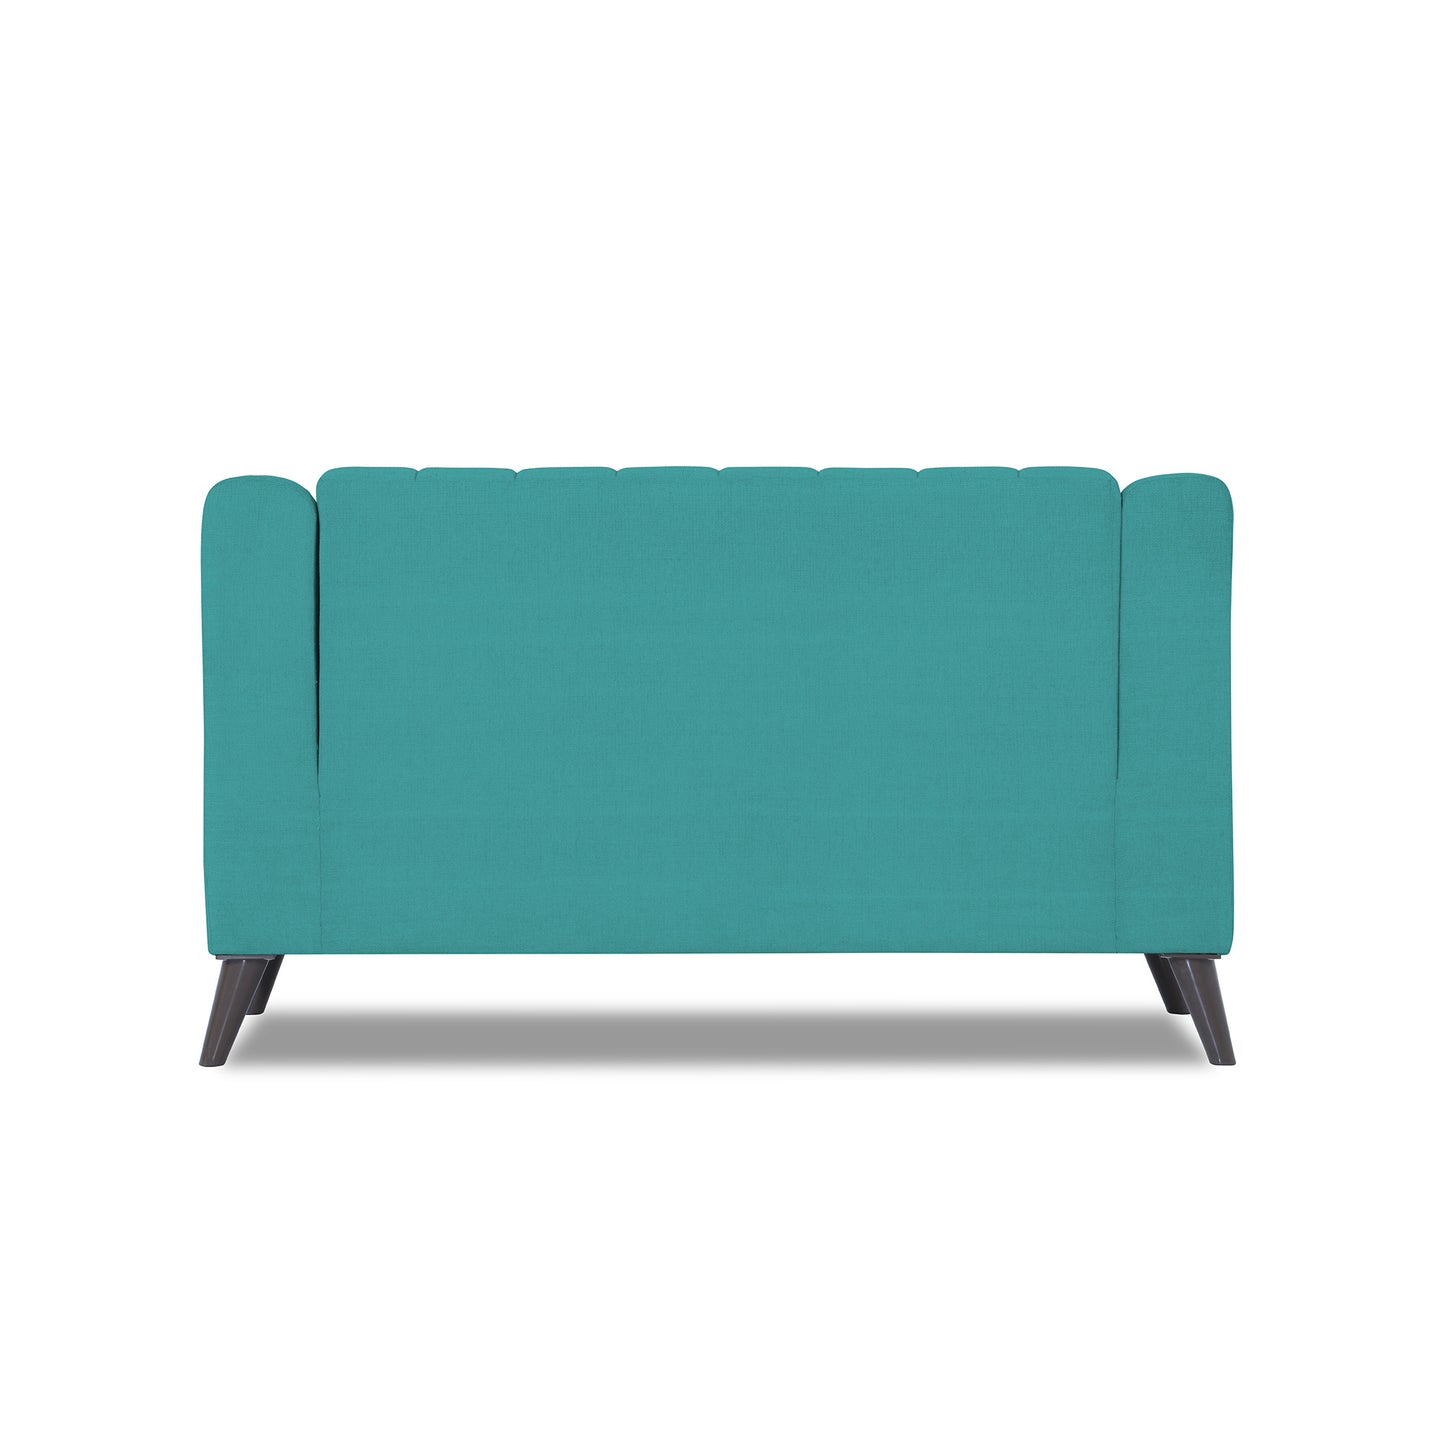 Adorn India Premium Laurel 2 Seater Sofa (Aqua Blue)